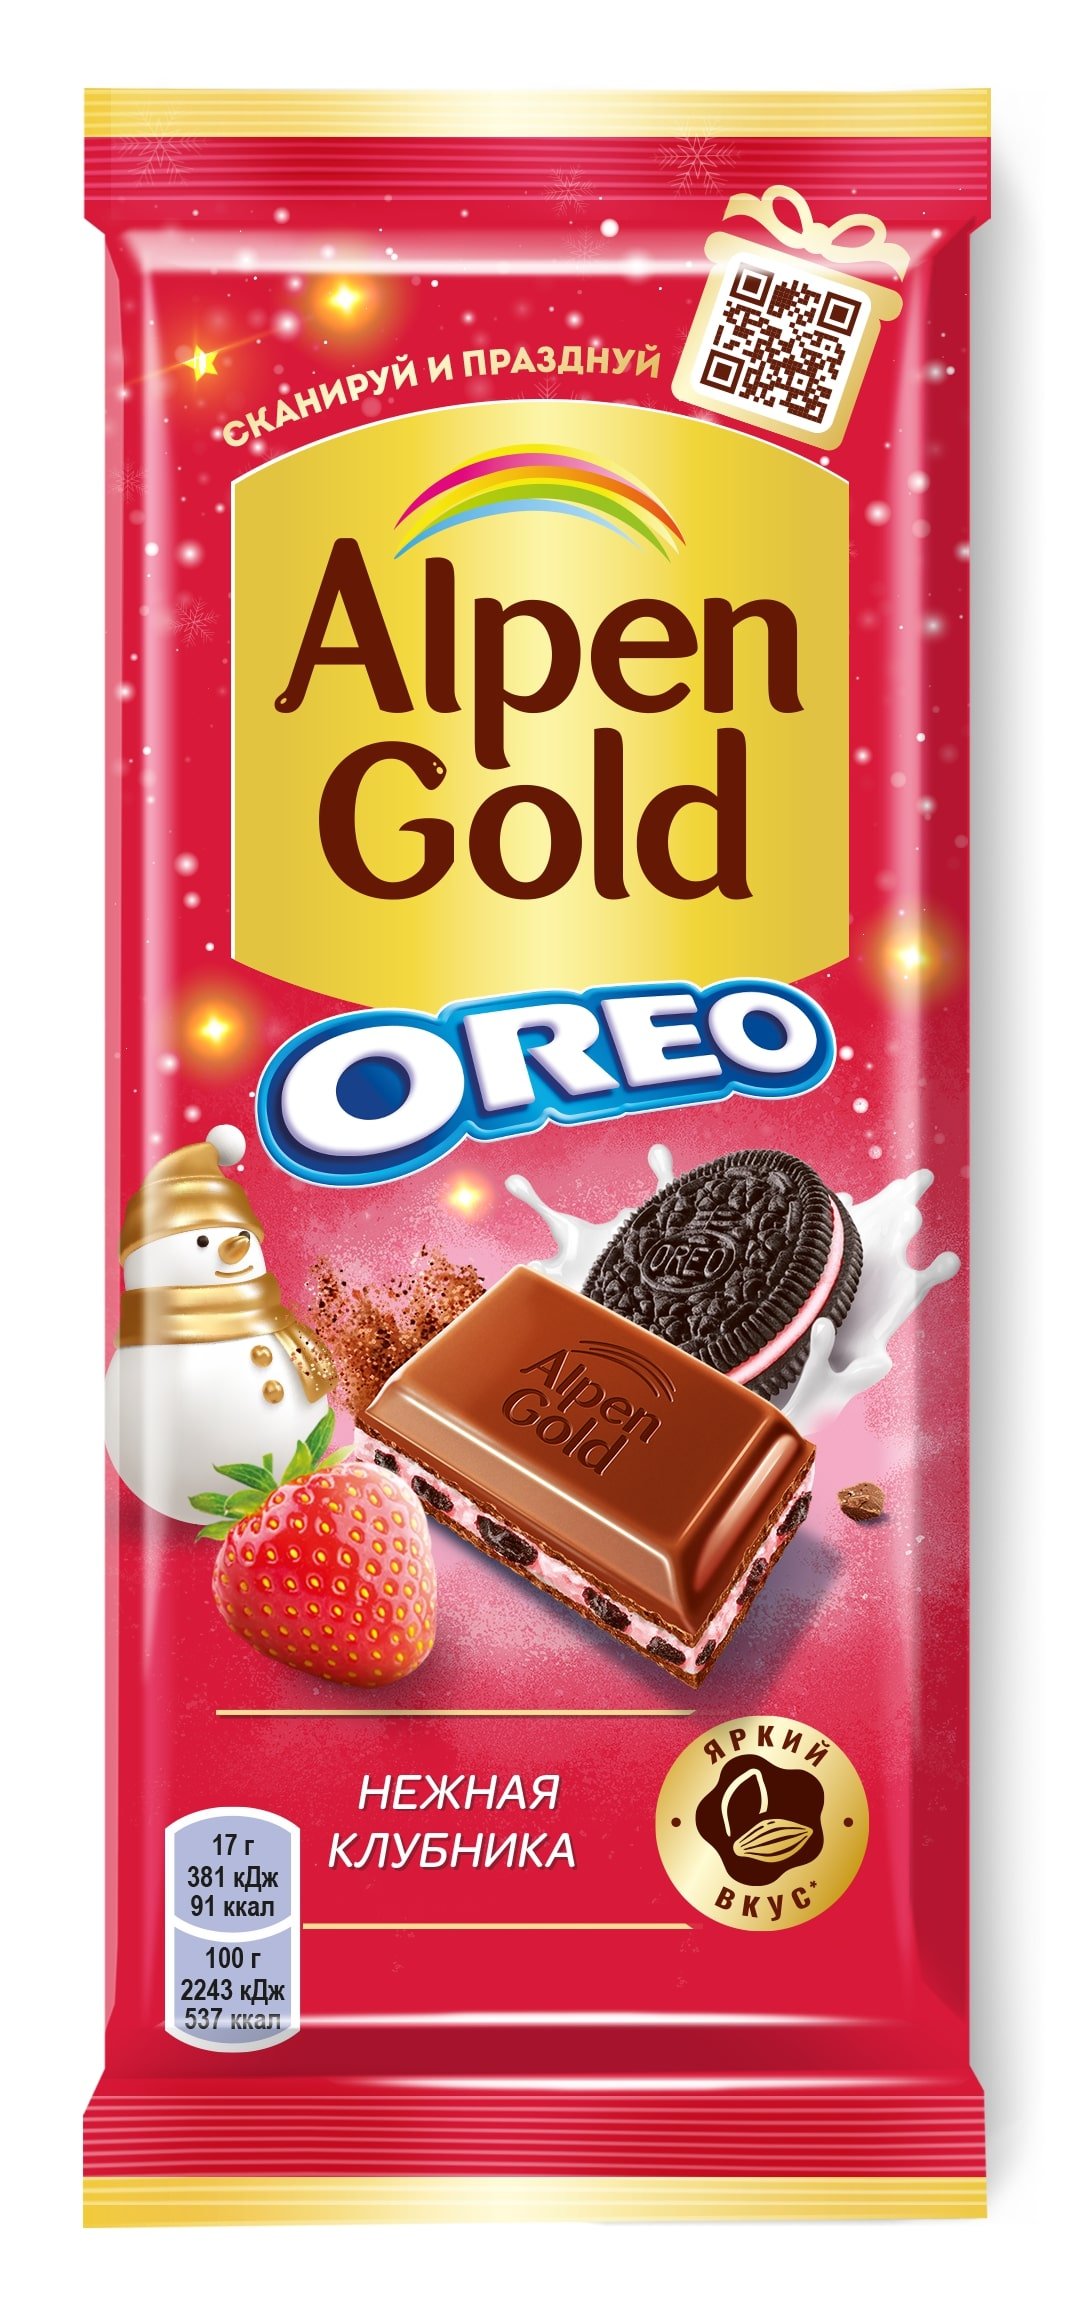 Плитка Alpen Gold Oreo с клубничной начинкой и печеньем 90 г